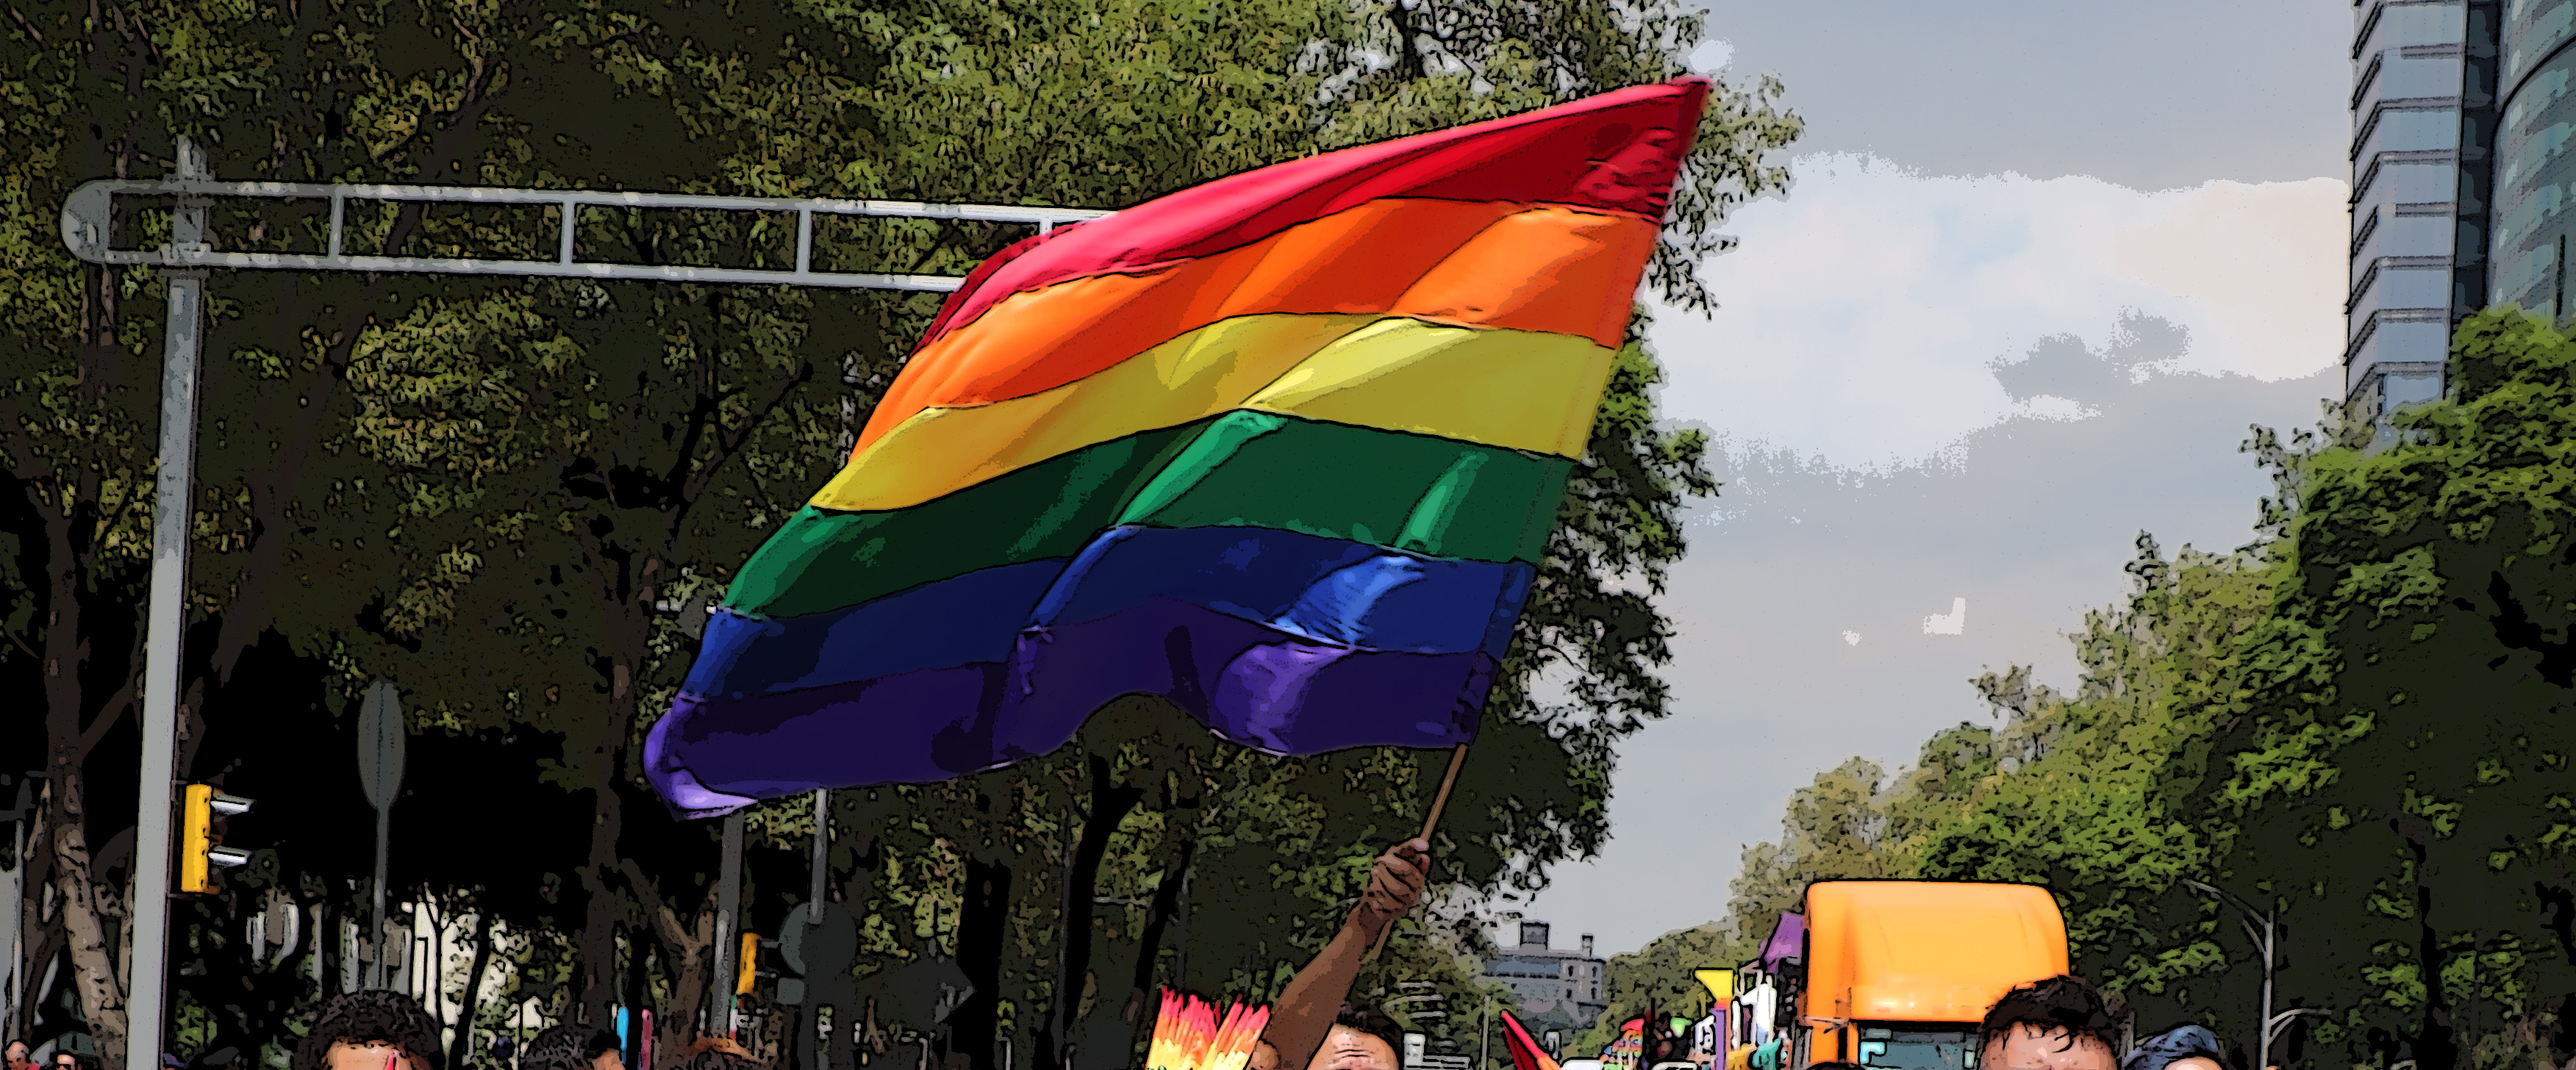 7ma Edición “Jóvenes defensorxs LGBT” 2021